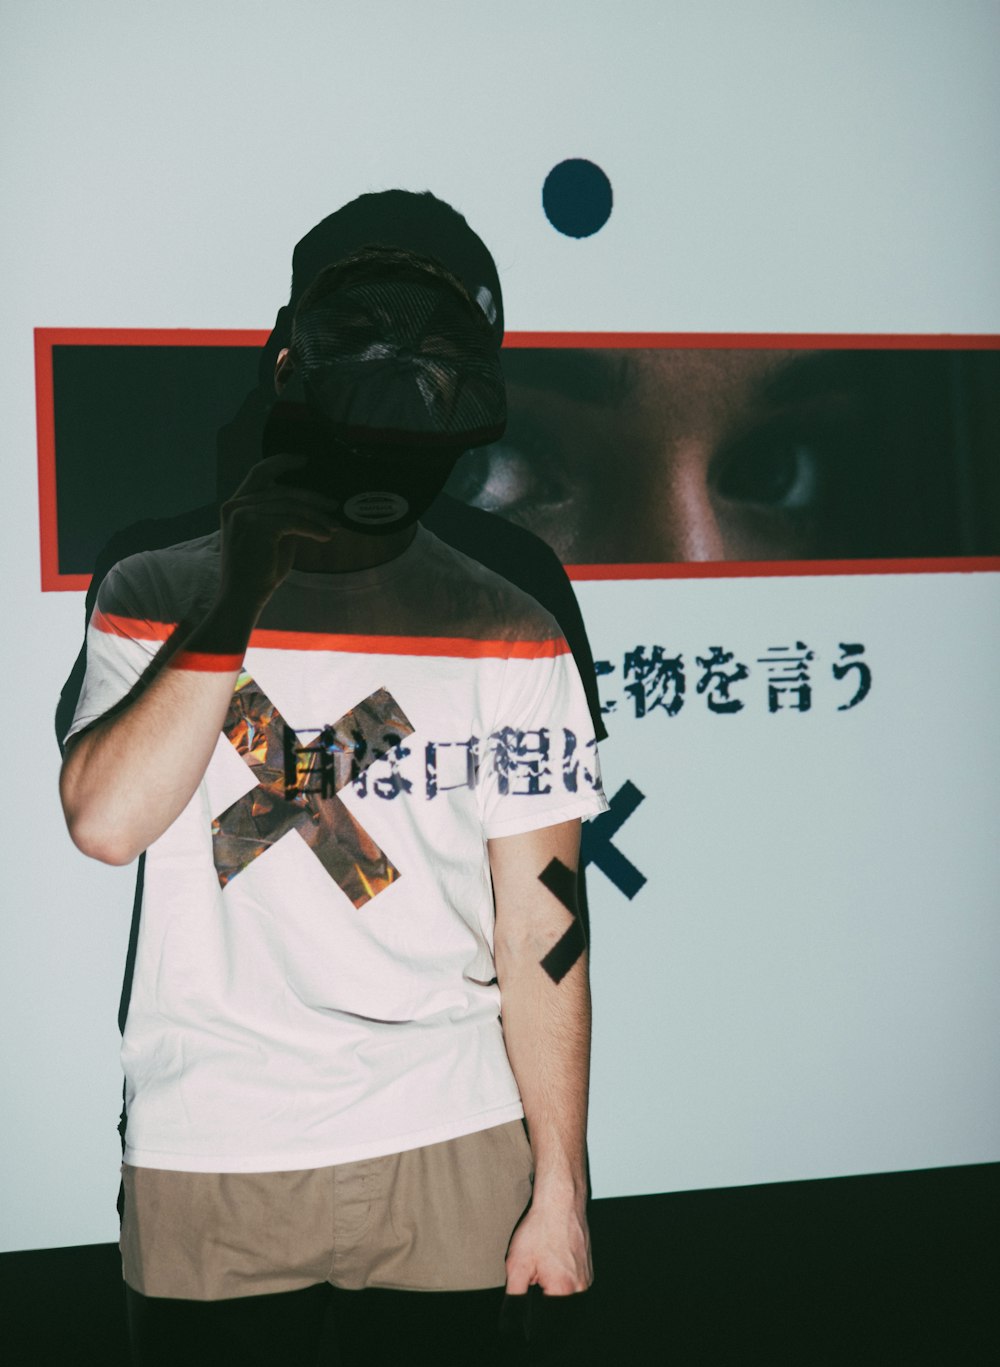 man in white crew neck t-shirt wearing black mask